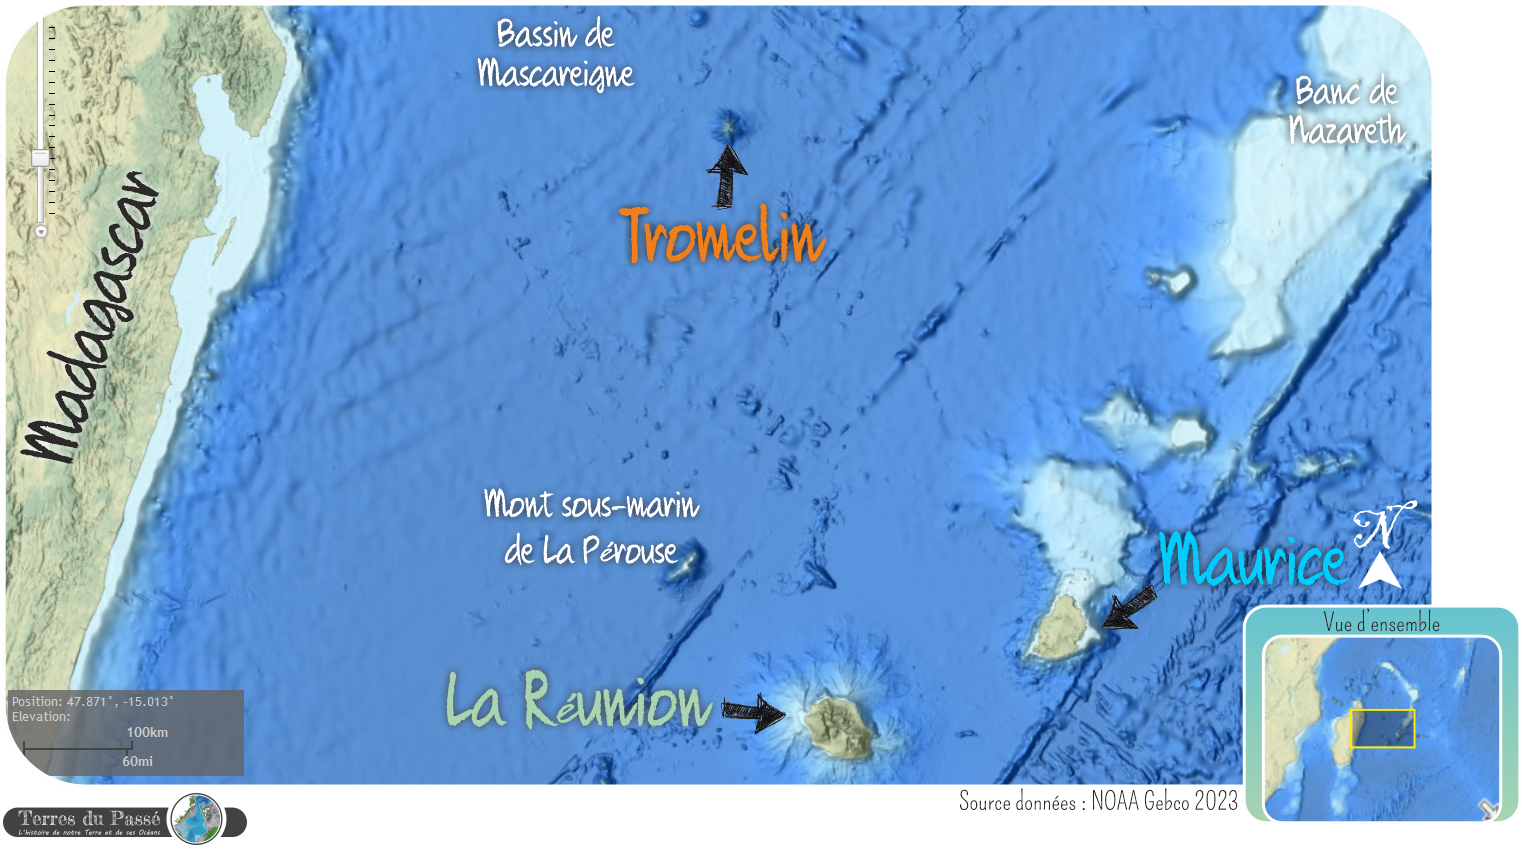 Carte de l'île Tromelin, entre Madagascar, le banc de Nazareth, et les îles de la Réunion et Maurice.